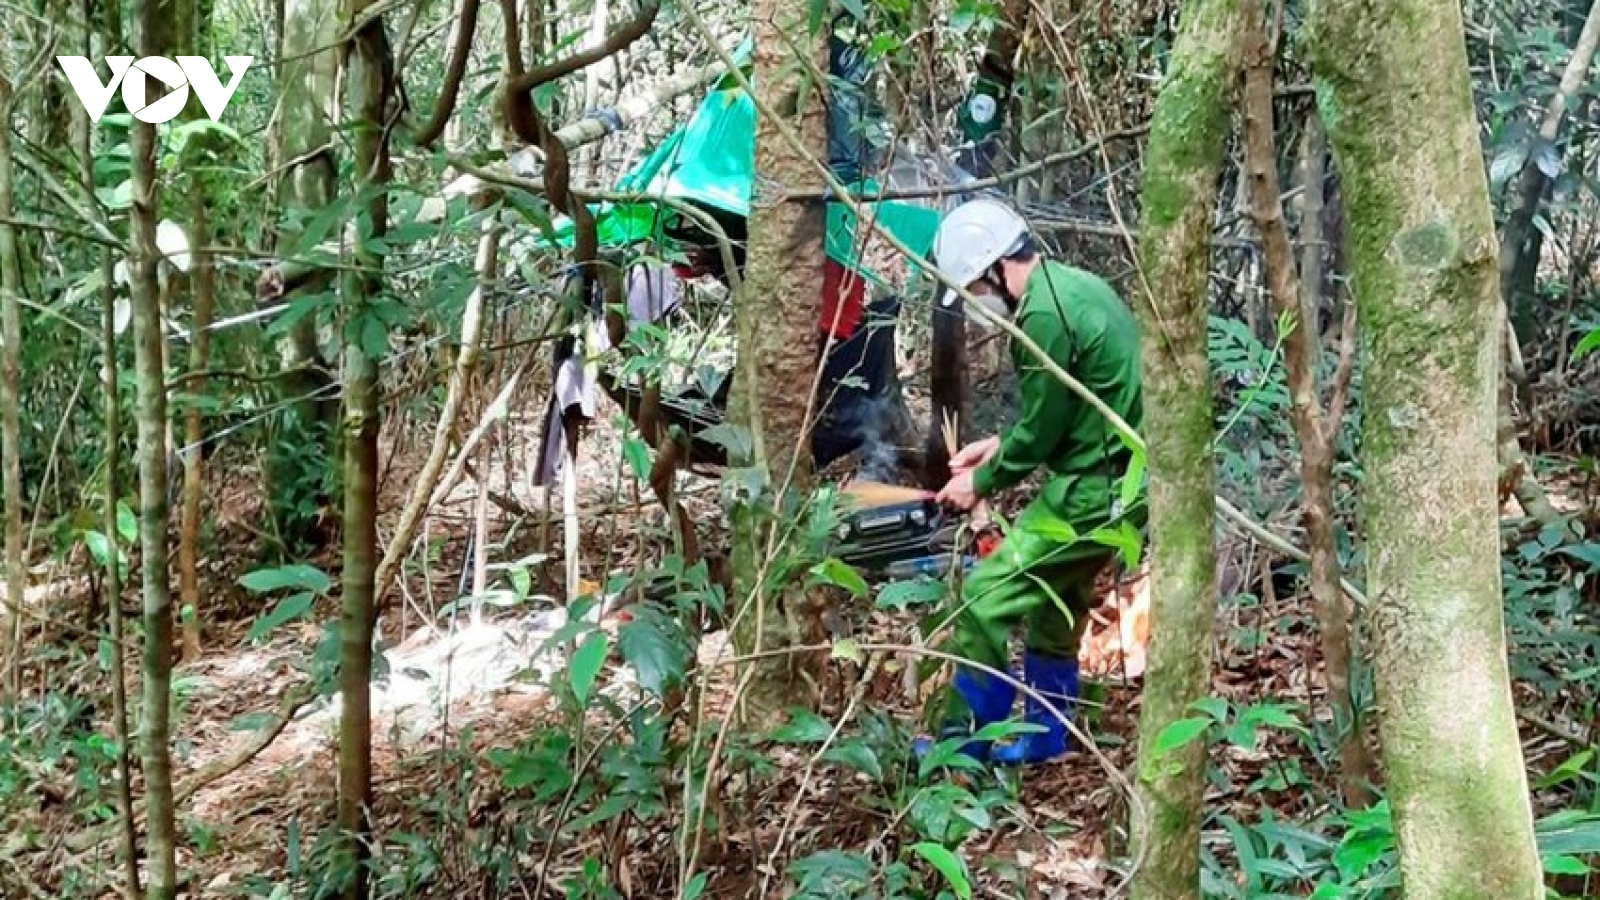 Thi thể một phụ nữ đang phân hủy trong khu rừng từng phát hiện 2 bộ xương khô